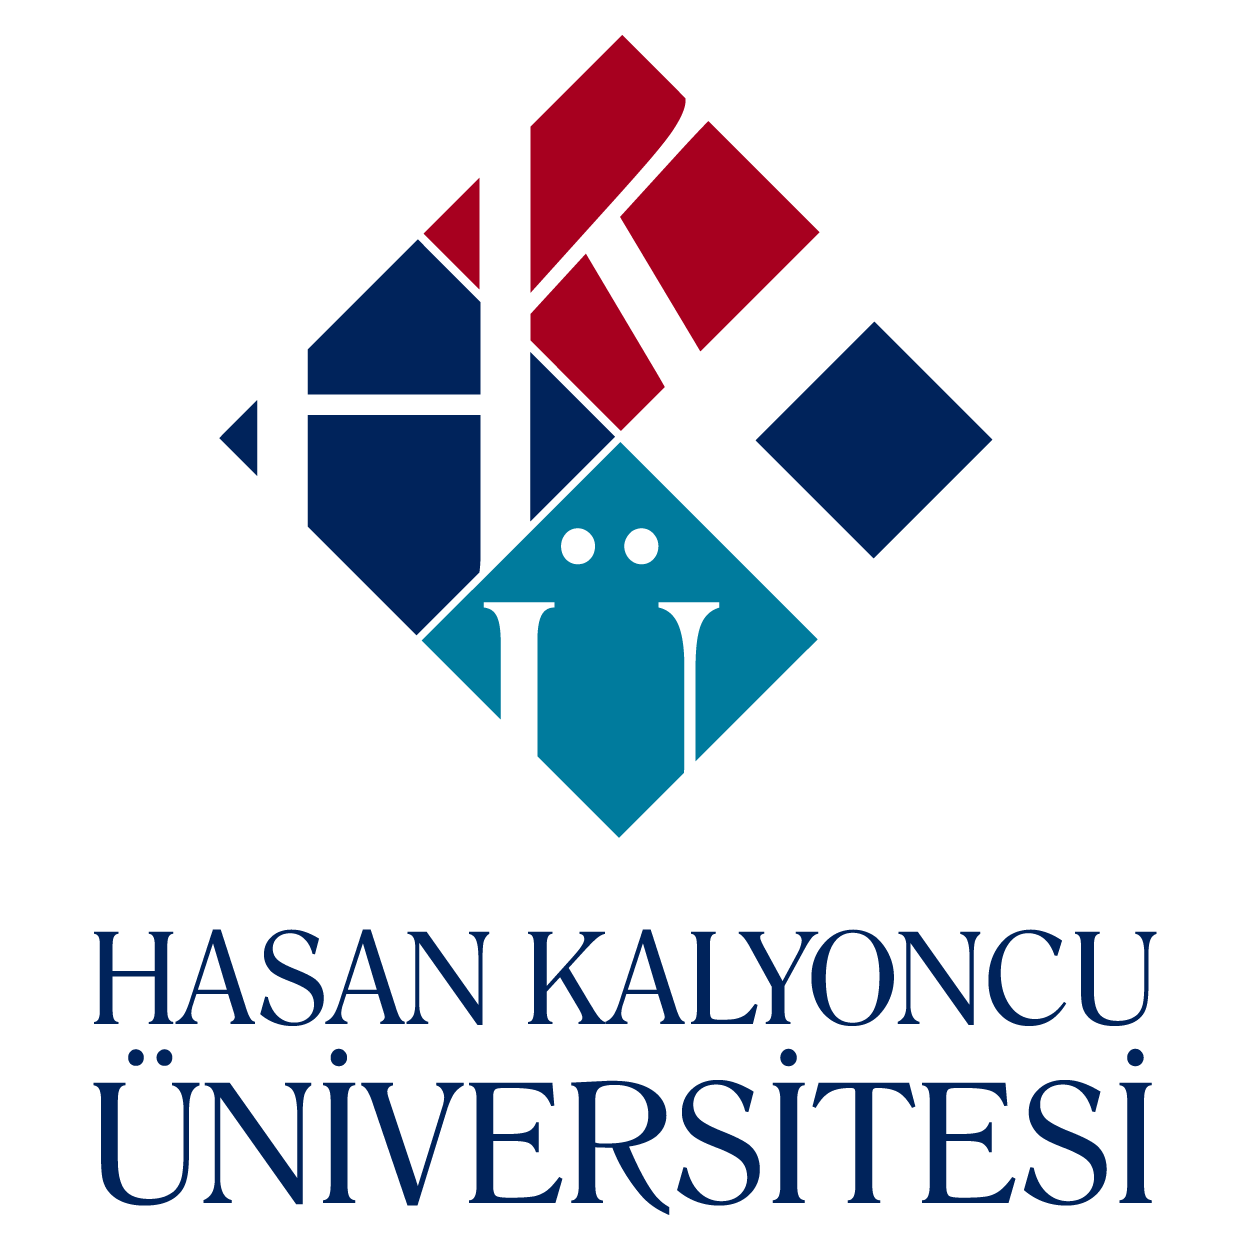 HASAN KALYONCU UNIVERSITY